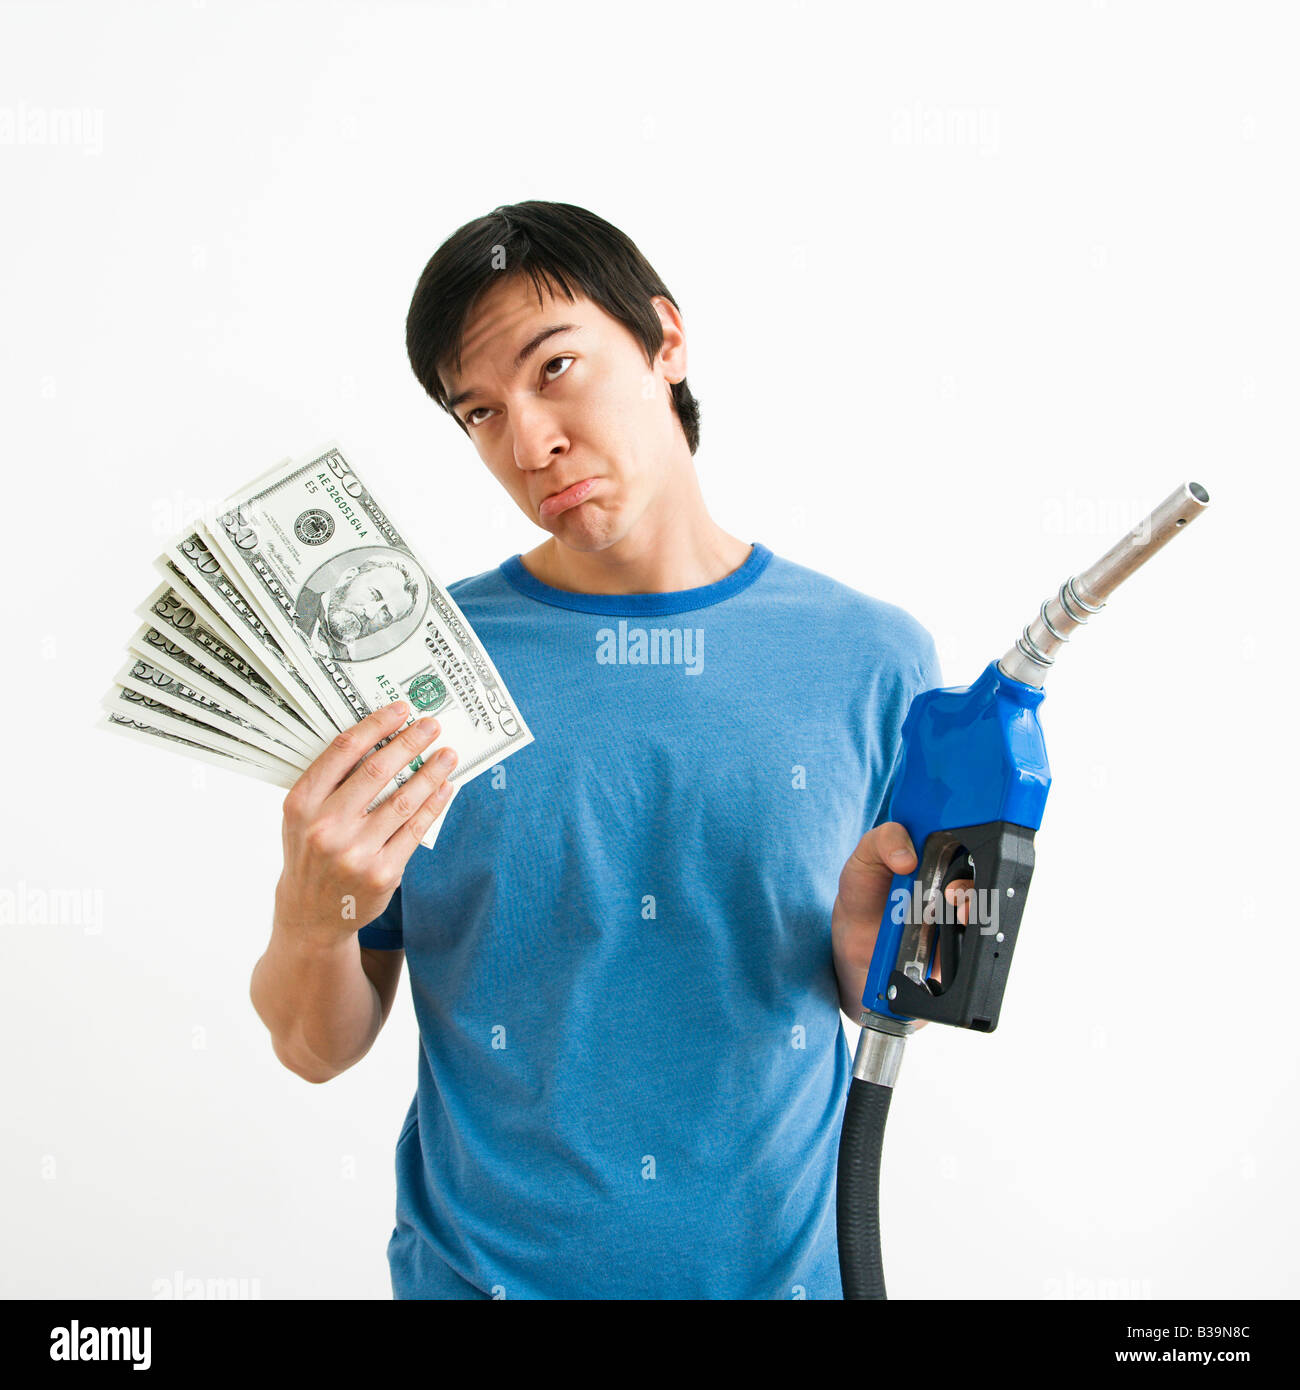 Asiatische junge Mann mit traurigen Ausdruck halten Geld und Gas Pumpe-Düse Stockfoto